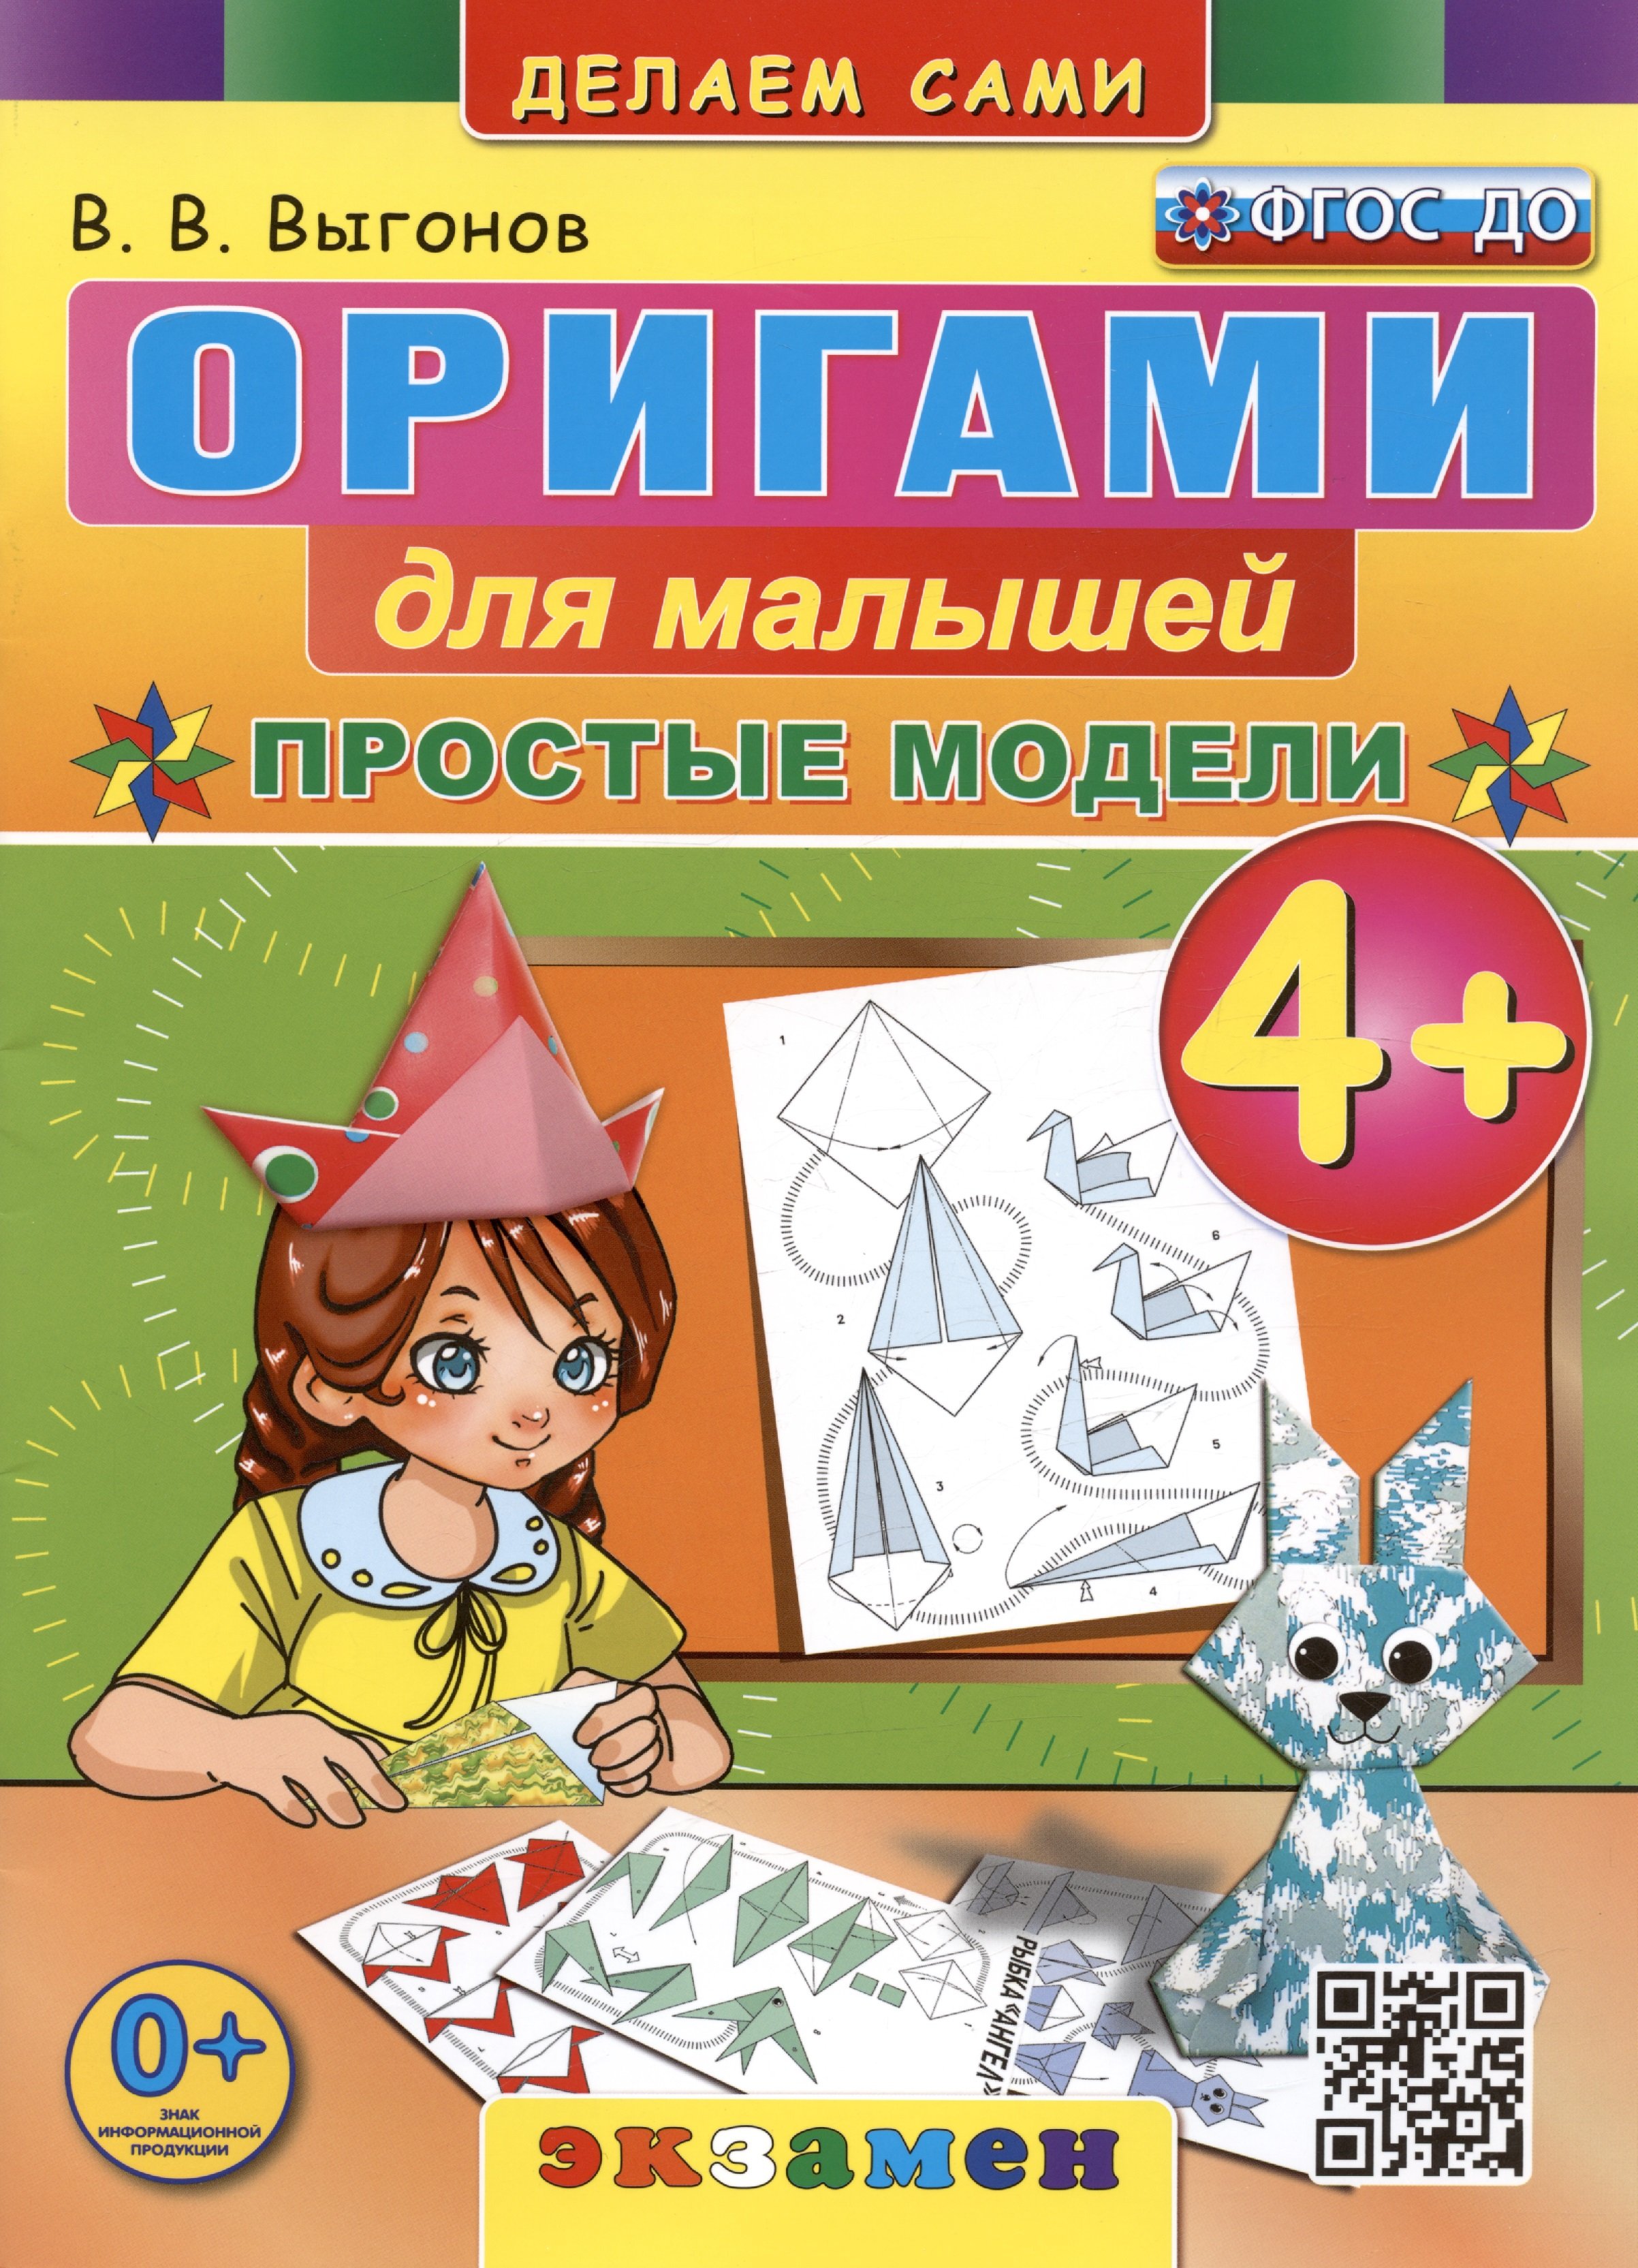 Оригами для малышей. Простые модели. 4+